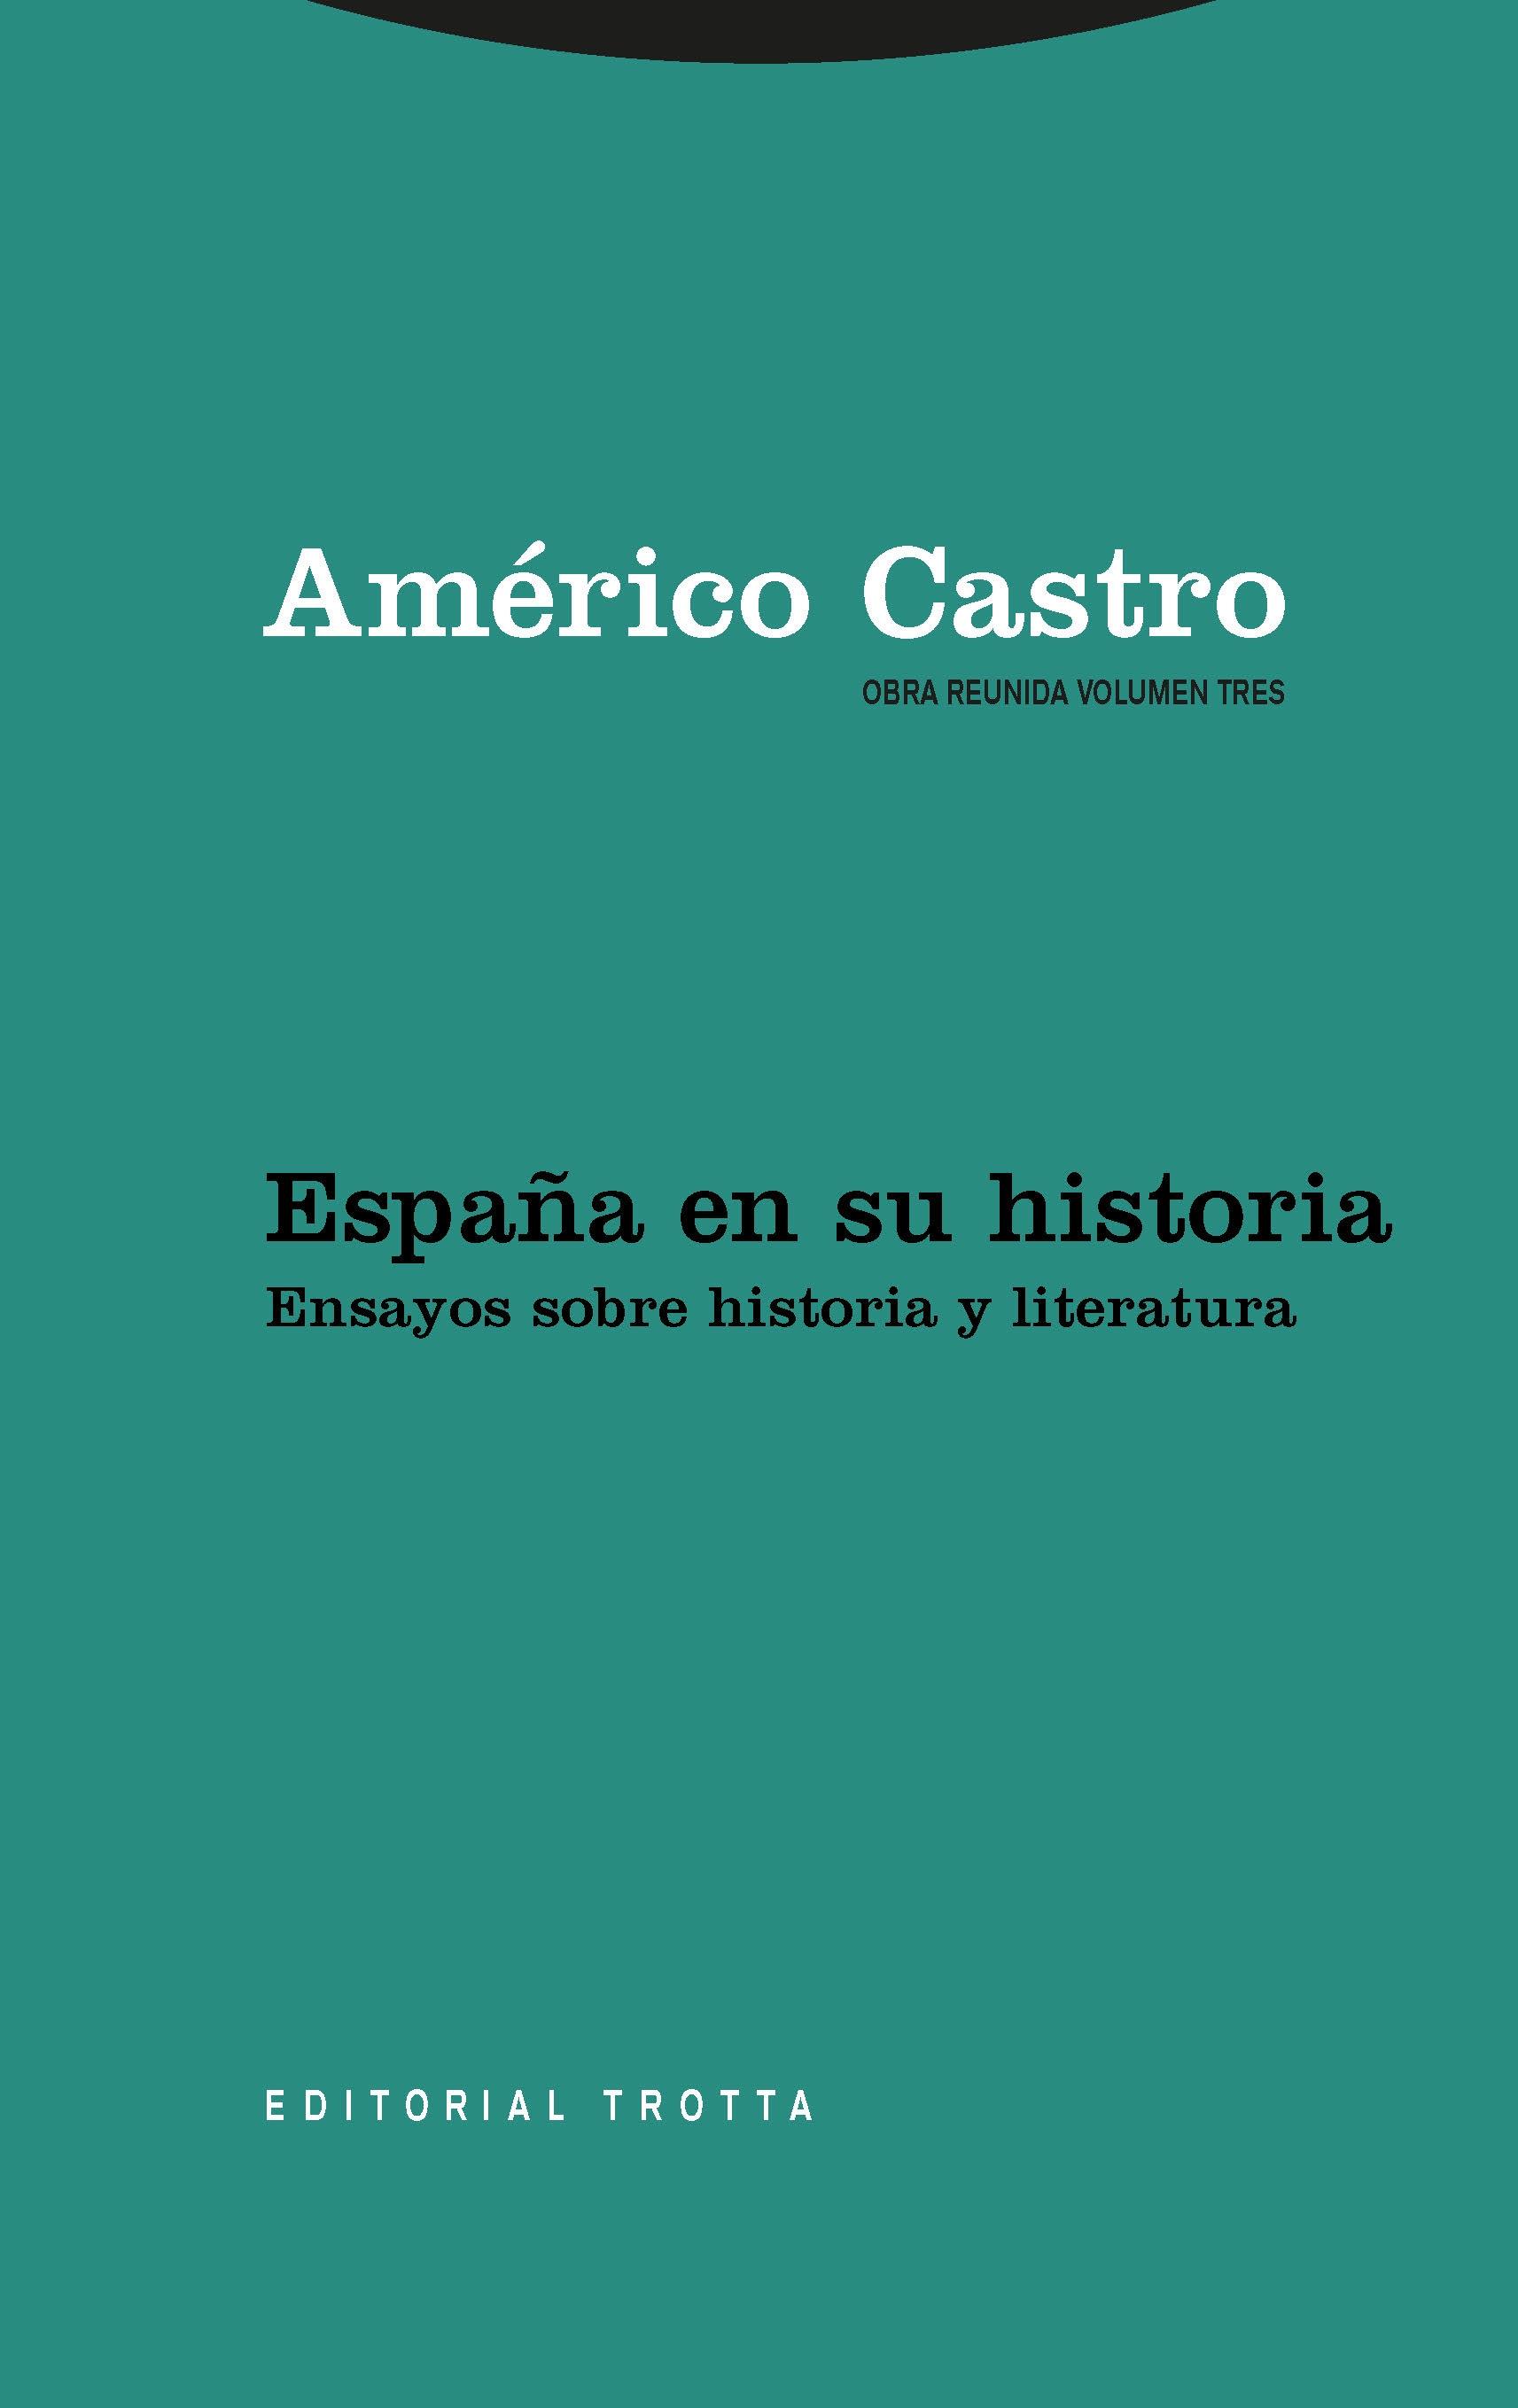 España en su historia. Ensayos sobre historia y literatura "(Obra reunida de Américo Castro - 3)". 